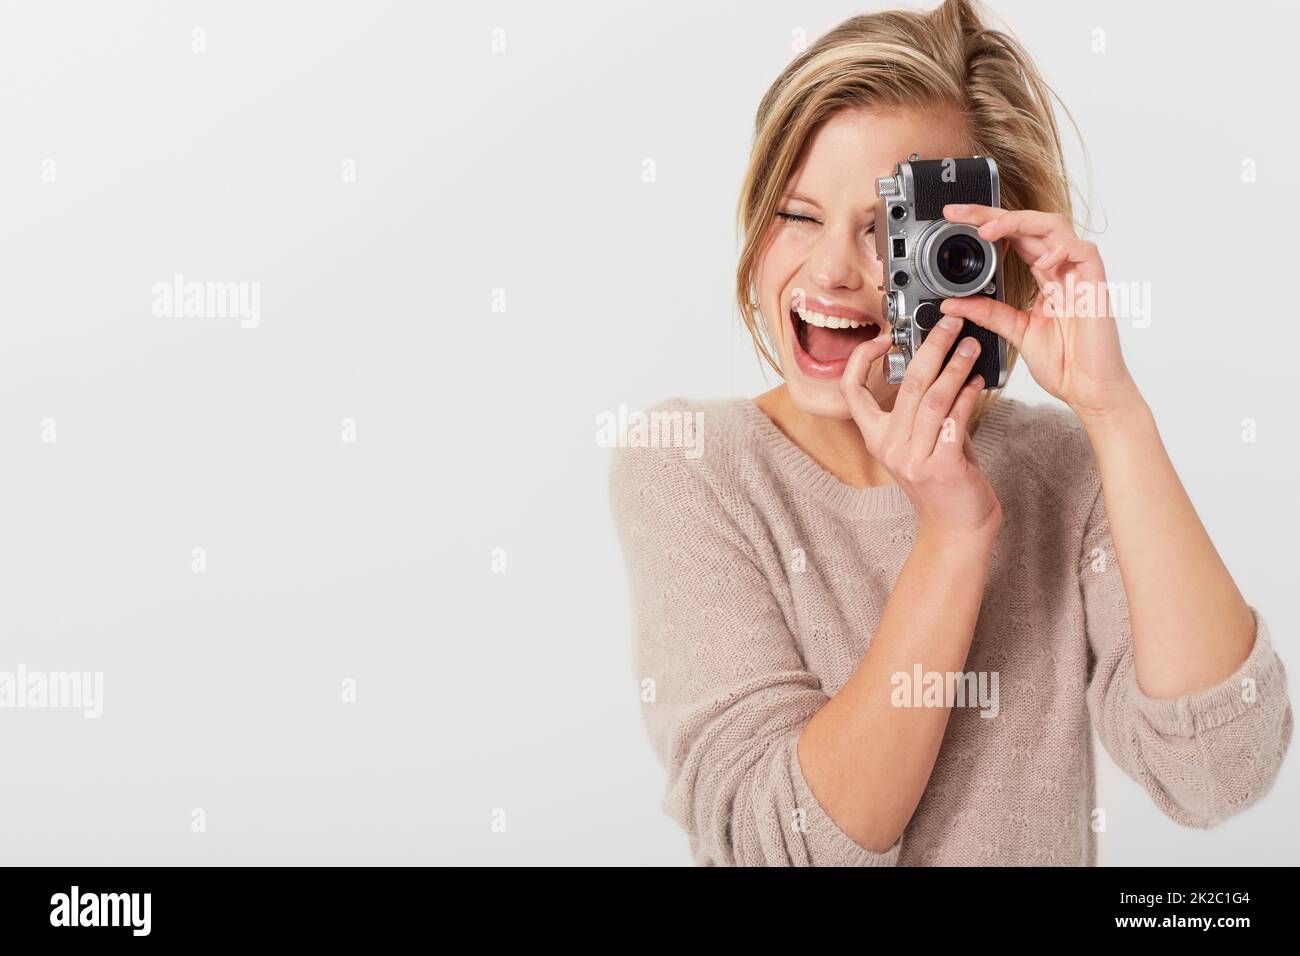 Lächeln Sie für mich. Eine junge Frau, die neben dem Copyspace ein Foto von Ihnen fotografiert. Stockfoto